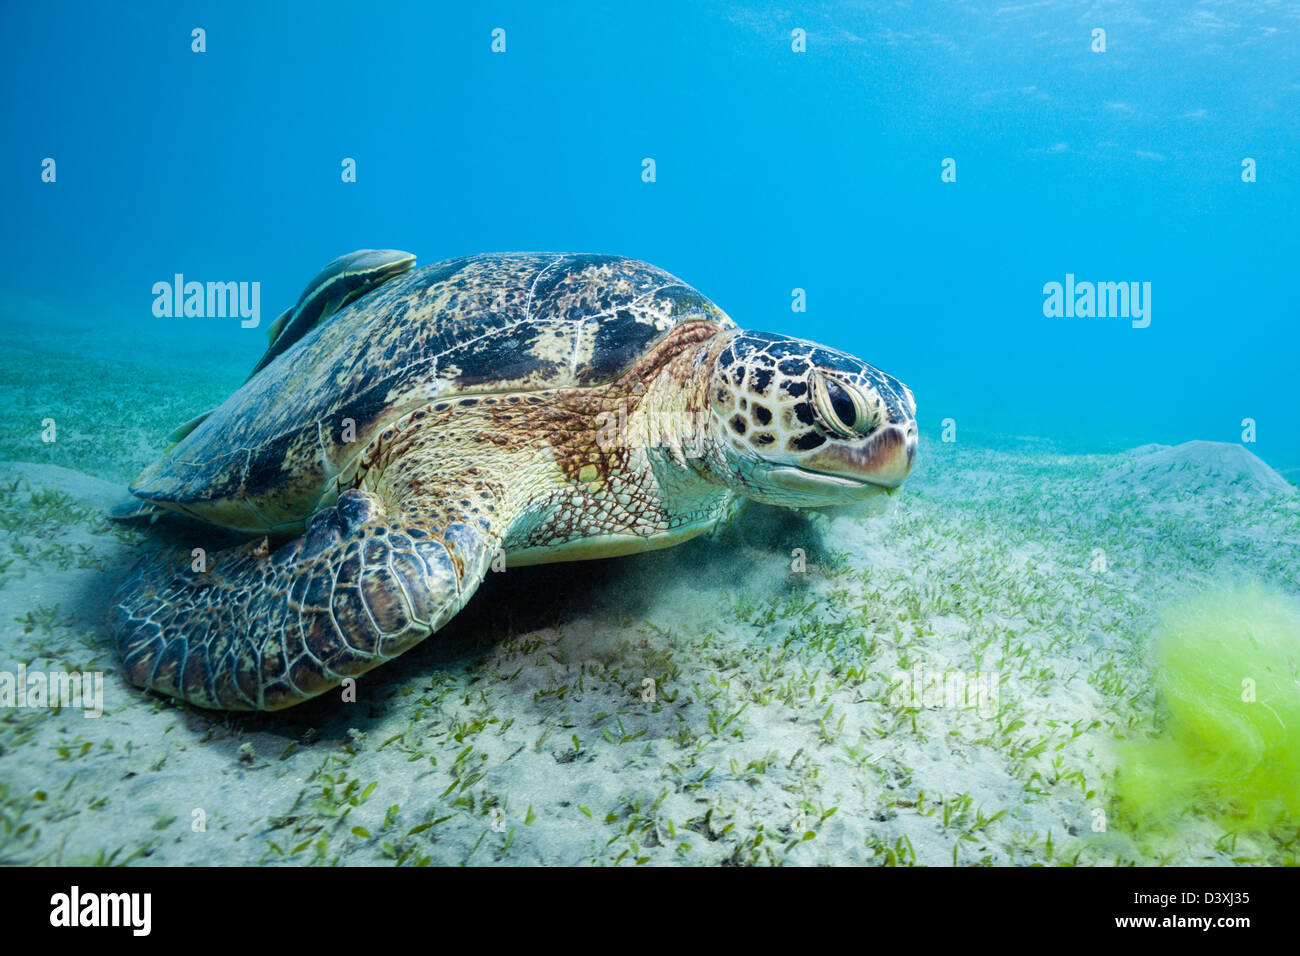 Green Sea Turtle feeding on Seagrass, Chelonia mydas, Marsa Alam, Red Sea, Egypt Stock Photo